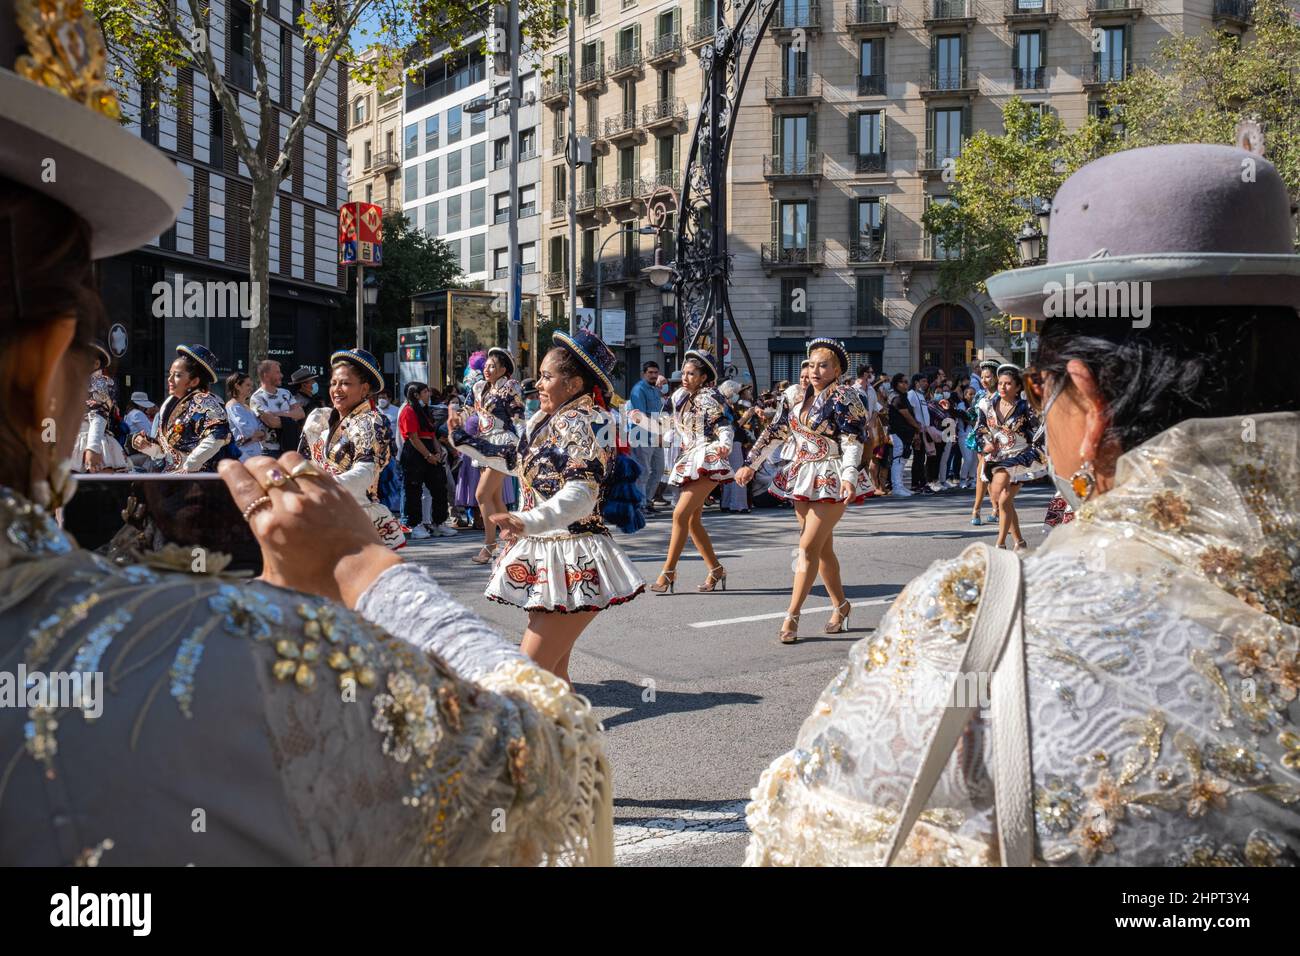 Bolivianische Frauen, die in traditionellen Outfits und Hüten gekleidet sind, treten während des Dia de la Hispanidad (Tag des hispanischen Erbes) in der Gracia Avenue in Barcelona auf Stockfoto